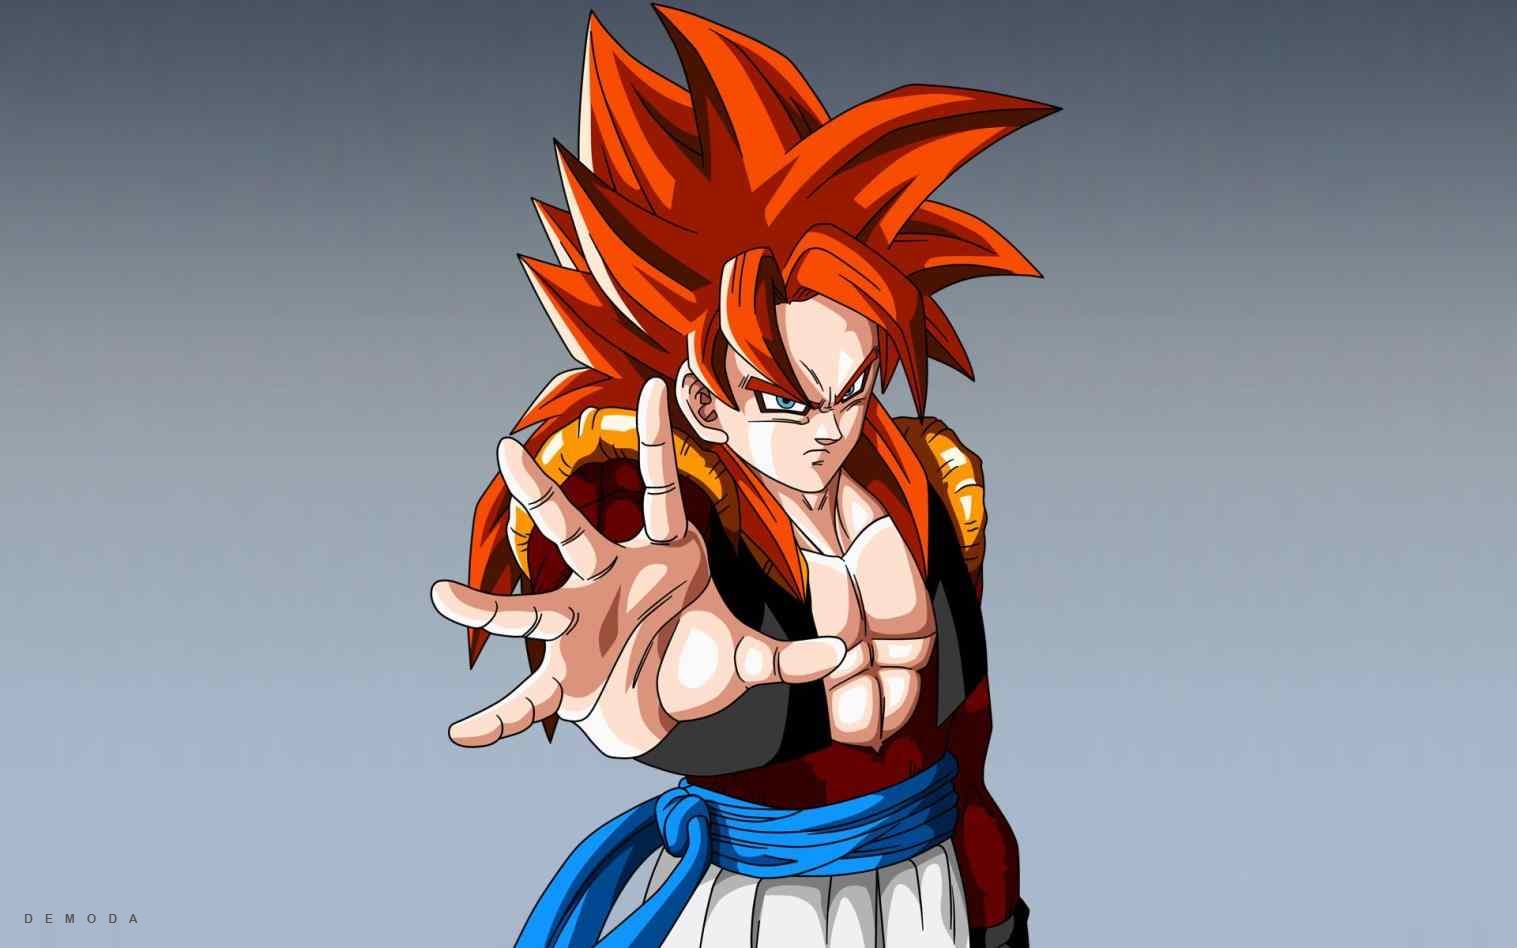 Bộ Sưu Tập Hình Ảnh Goku Với Hơn 999+ Hình Ảnh Cực Chất, Chất Lượng Full 4K.